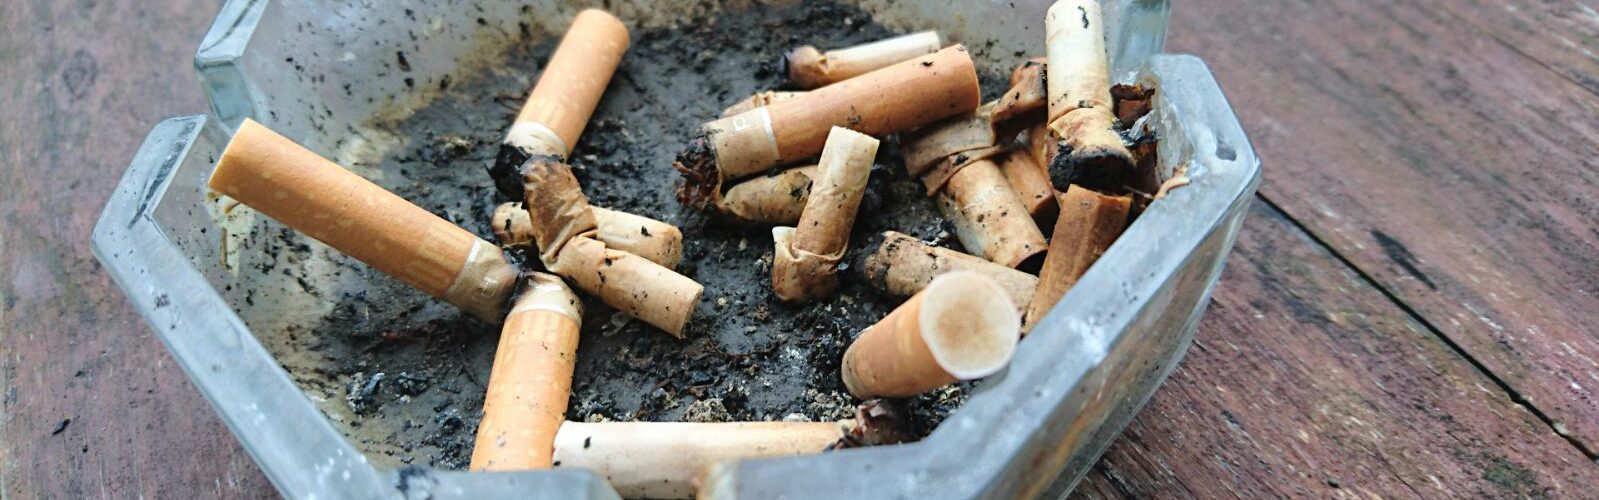 Zigarettenrauch schadet der DNA